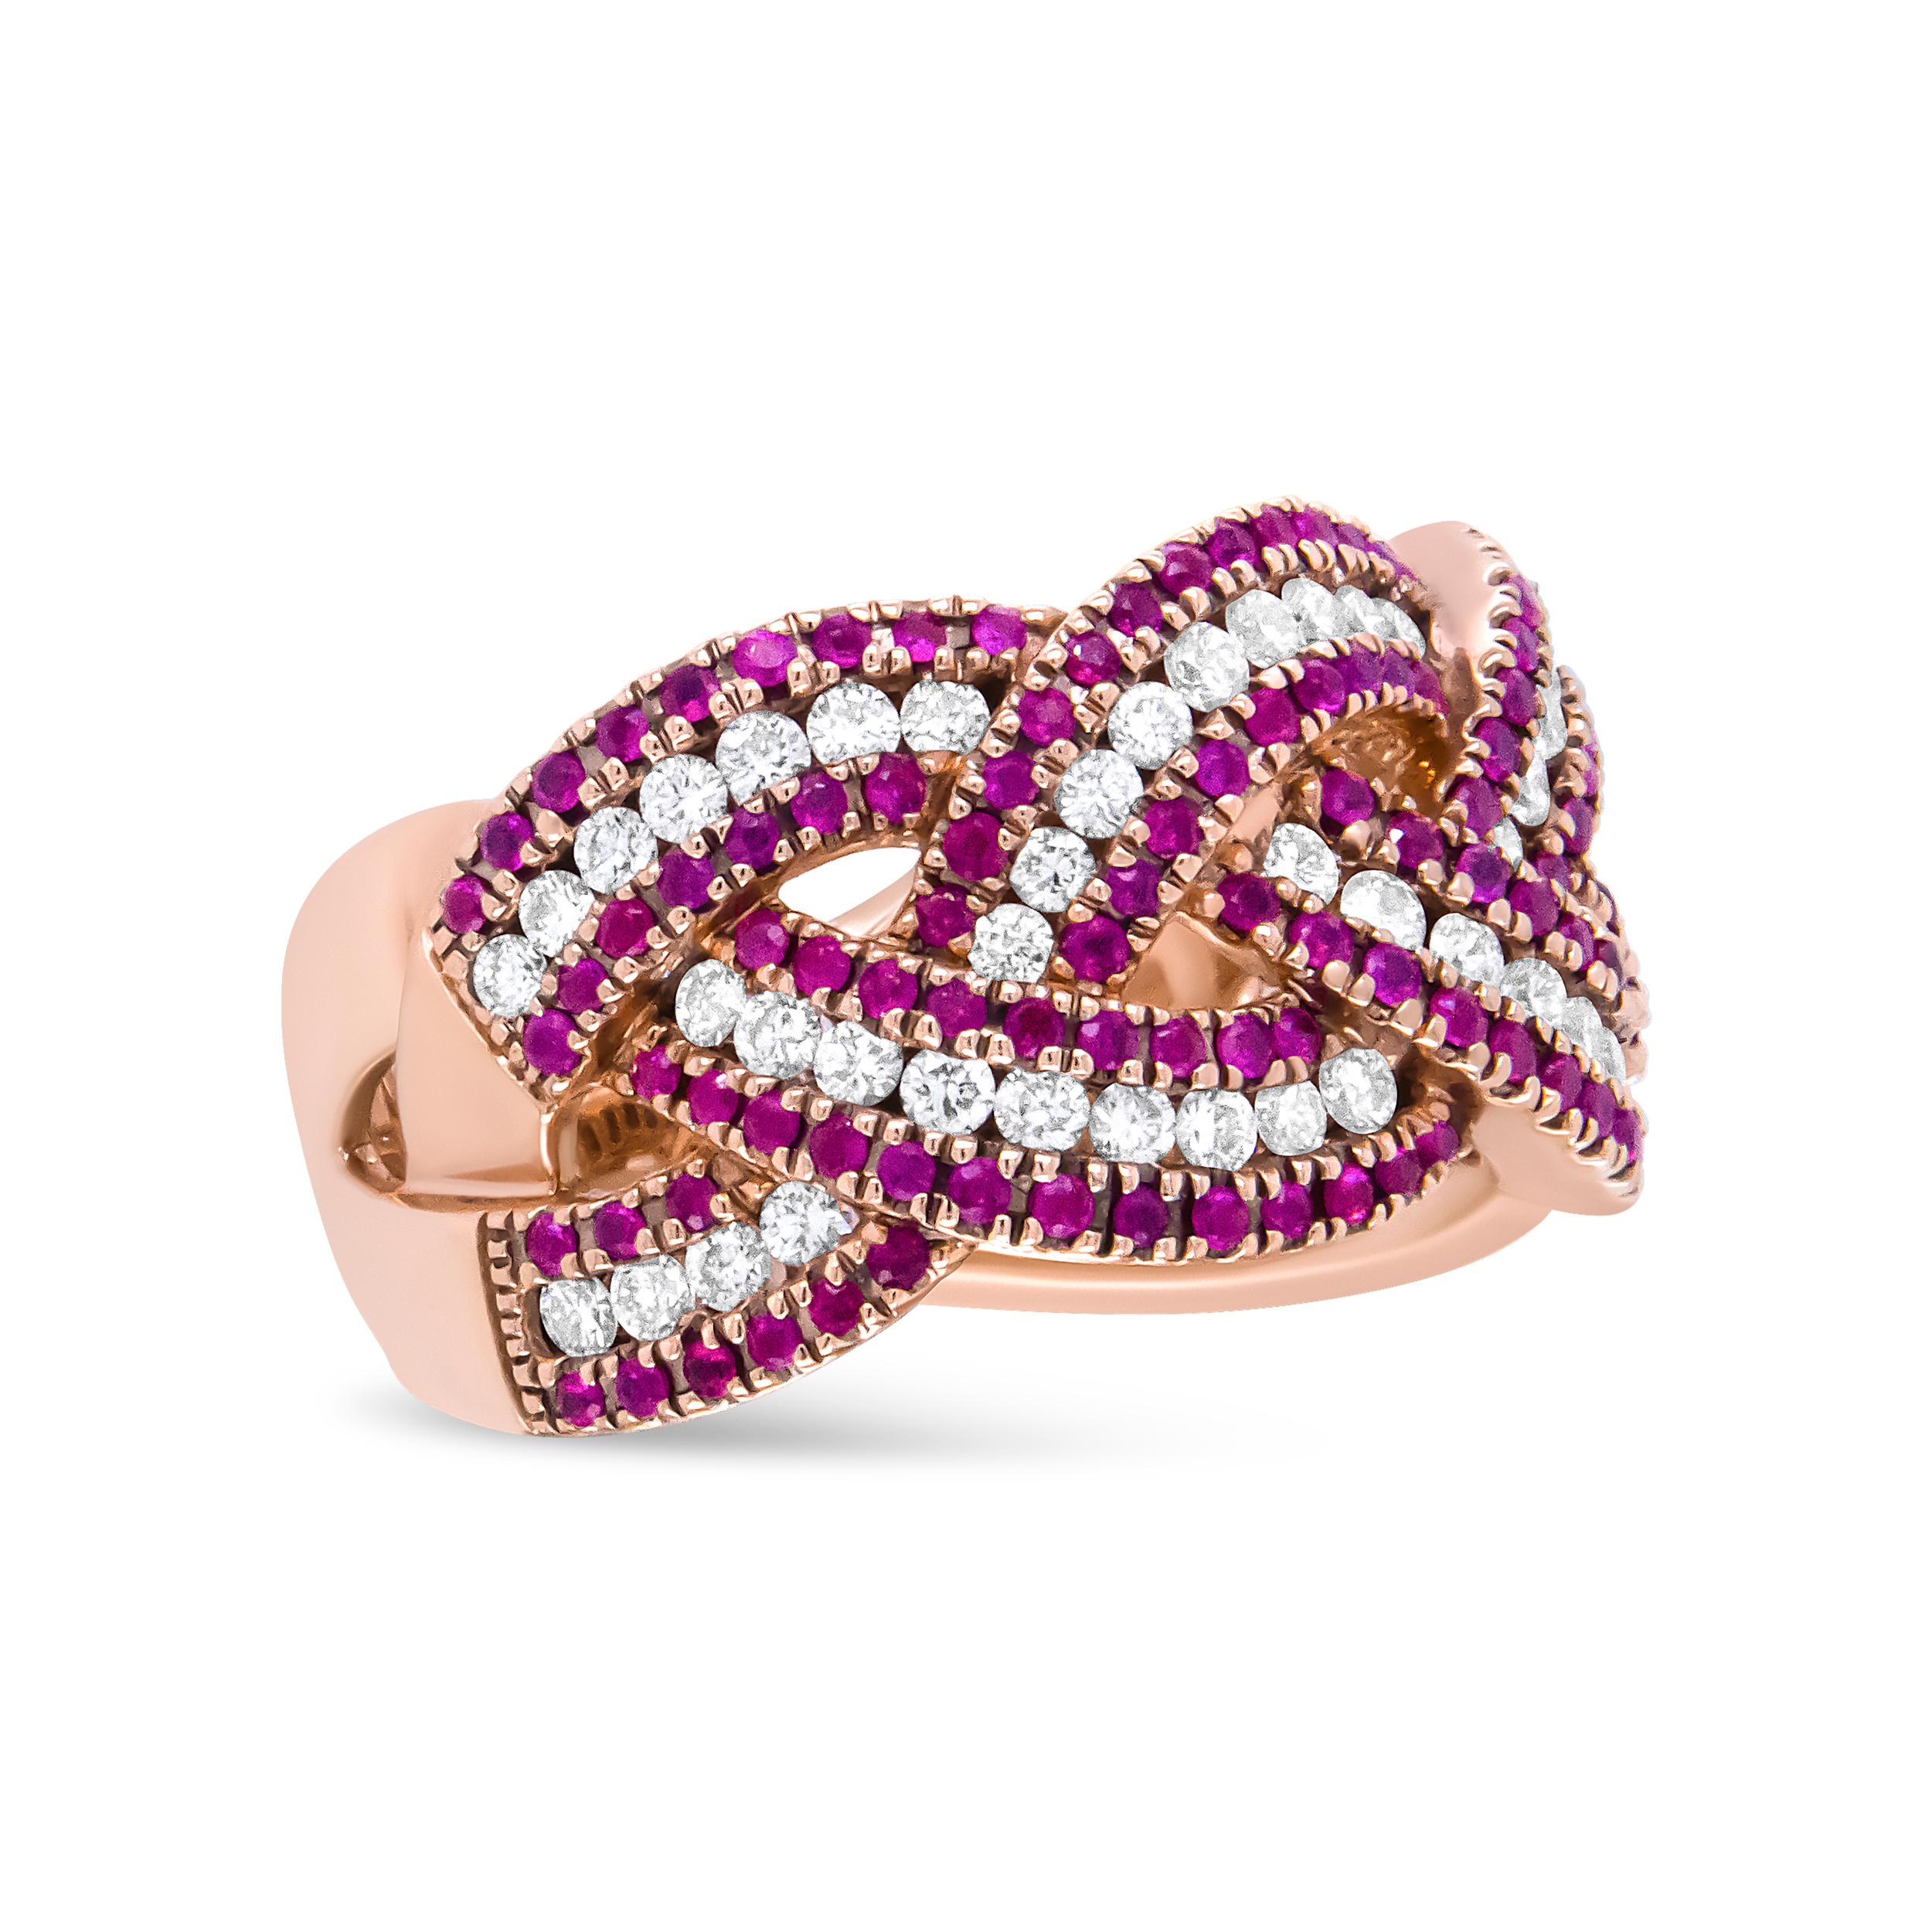 Rubine und Diamanten tanzen zart über dieses Band aus 18 Karat Roségold. Dieser Ring ist mit einem verschlungenen Bypass-Design gefertigt und mit einem Gesamtkaratgewicht von 7/8 c.t. besetzt. Reihen roter Rubine wechseln sich mit Reihen natürlicher